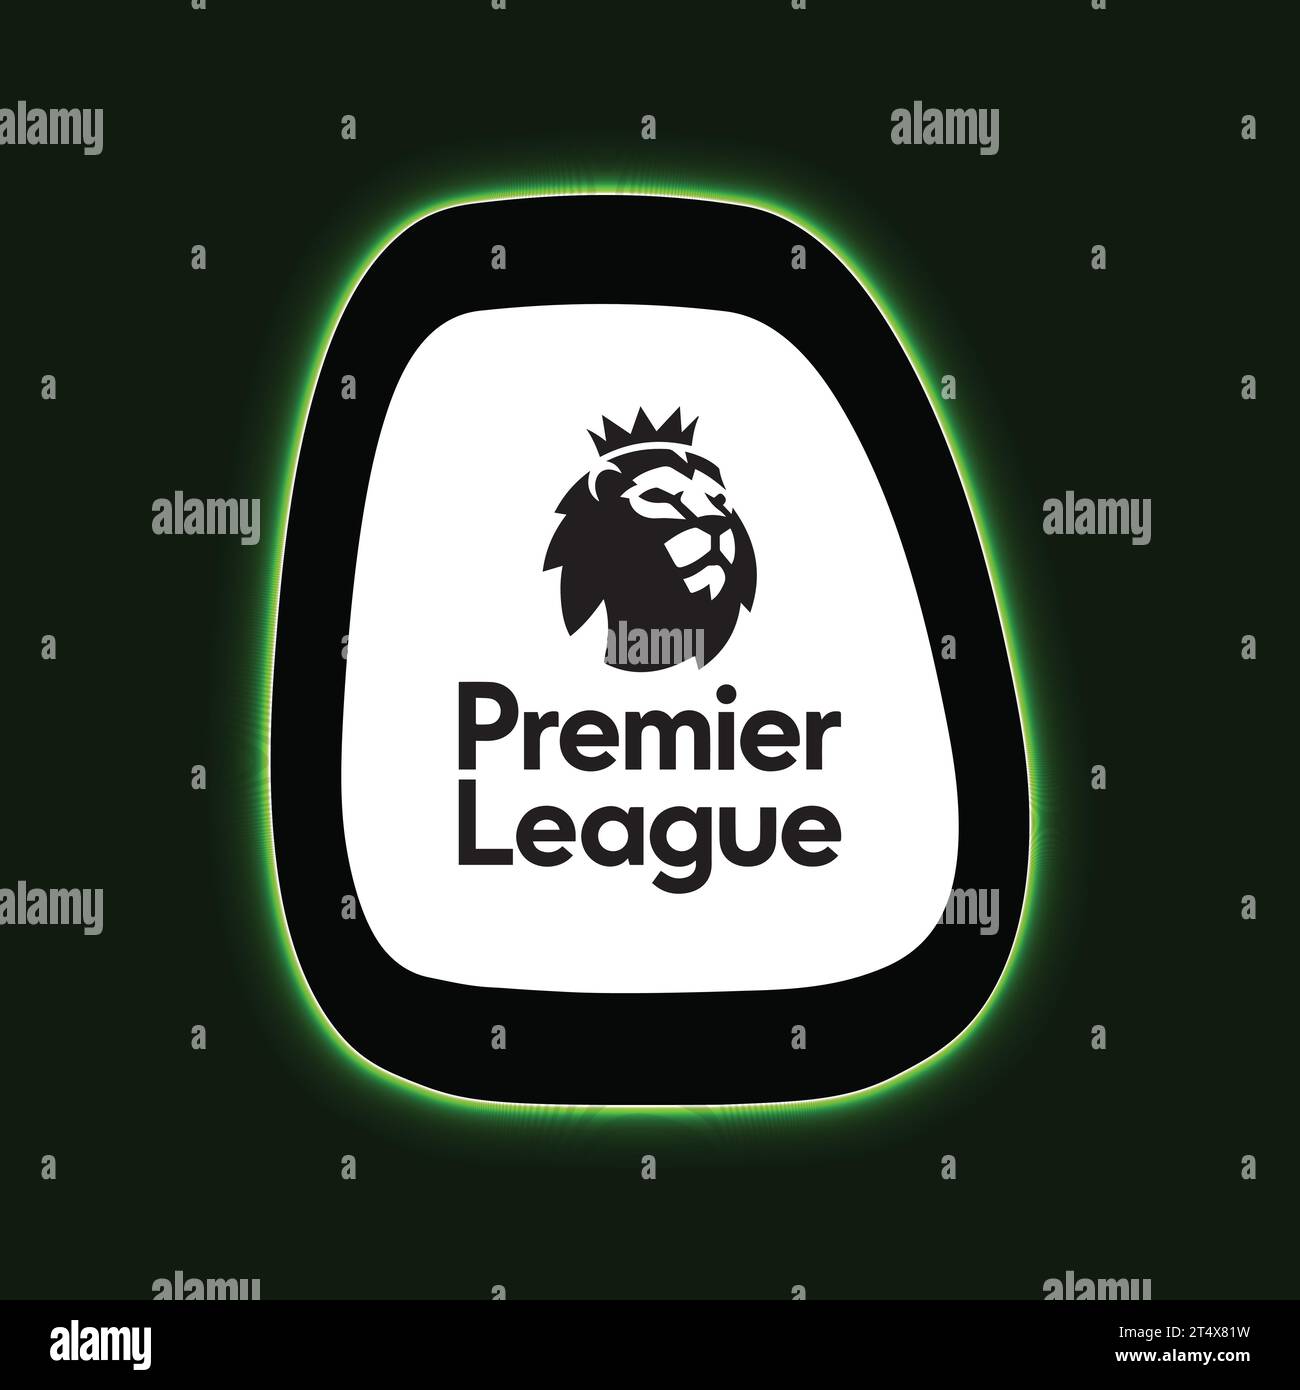 Vista pannello chiaro al neon con logo Premier League sfondo verde sistema di campionato di calcio professionistico inglese, illustrazione vettoriale immagine astratta Illustrazione Vettoriale